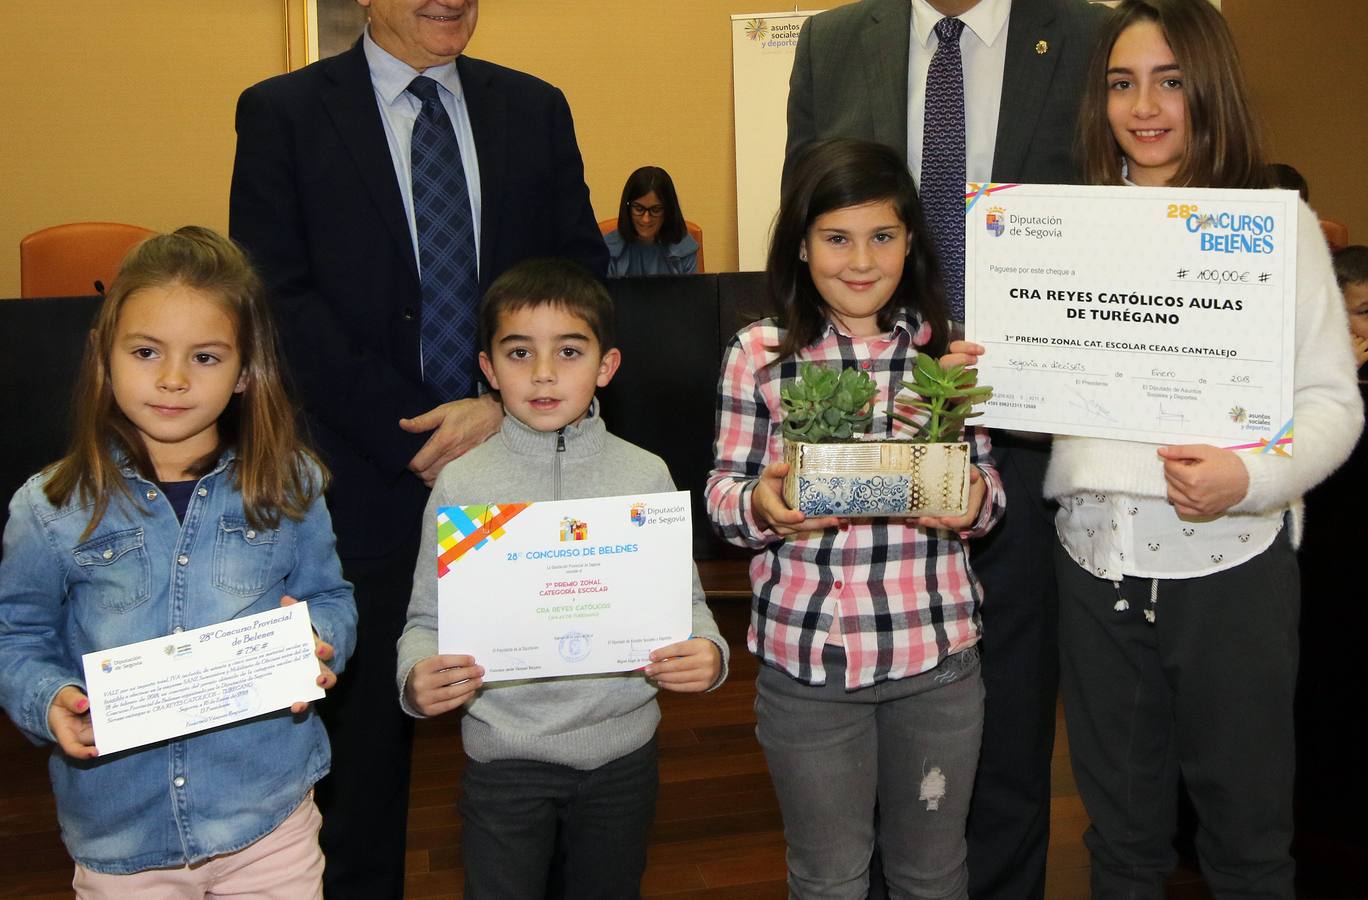 La Diputación de Segovia entrega los premios del Concurso Provincial de Belenes